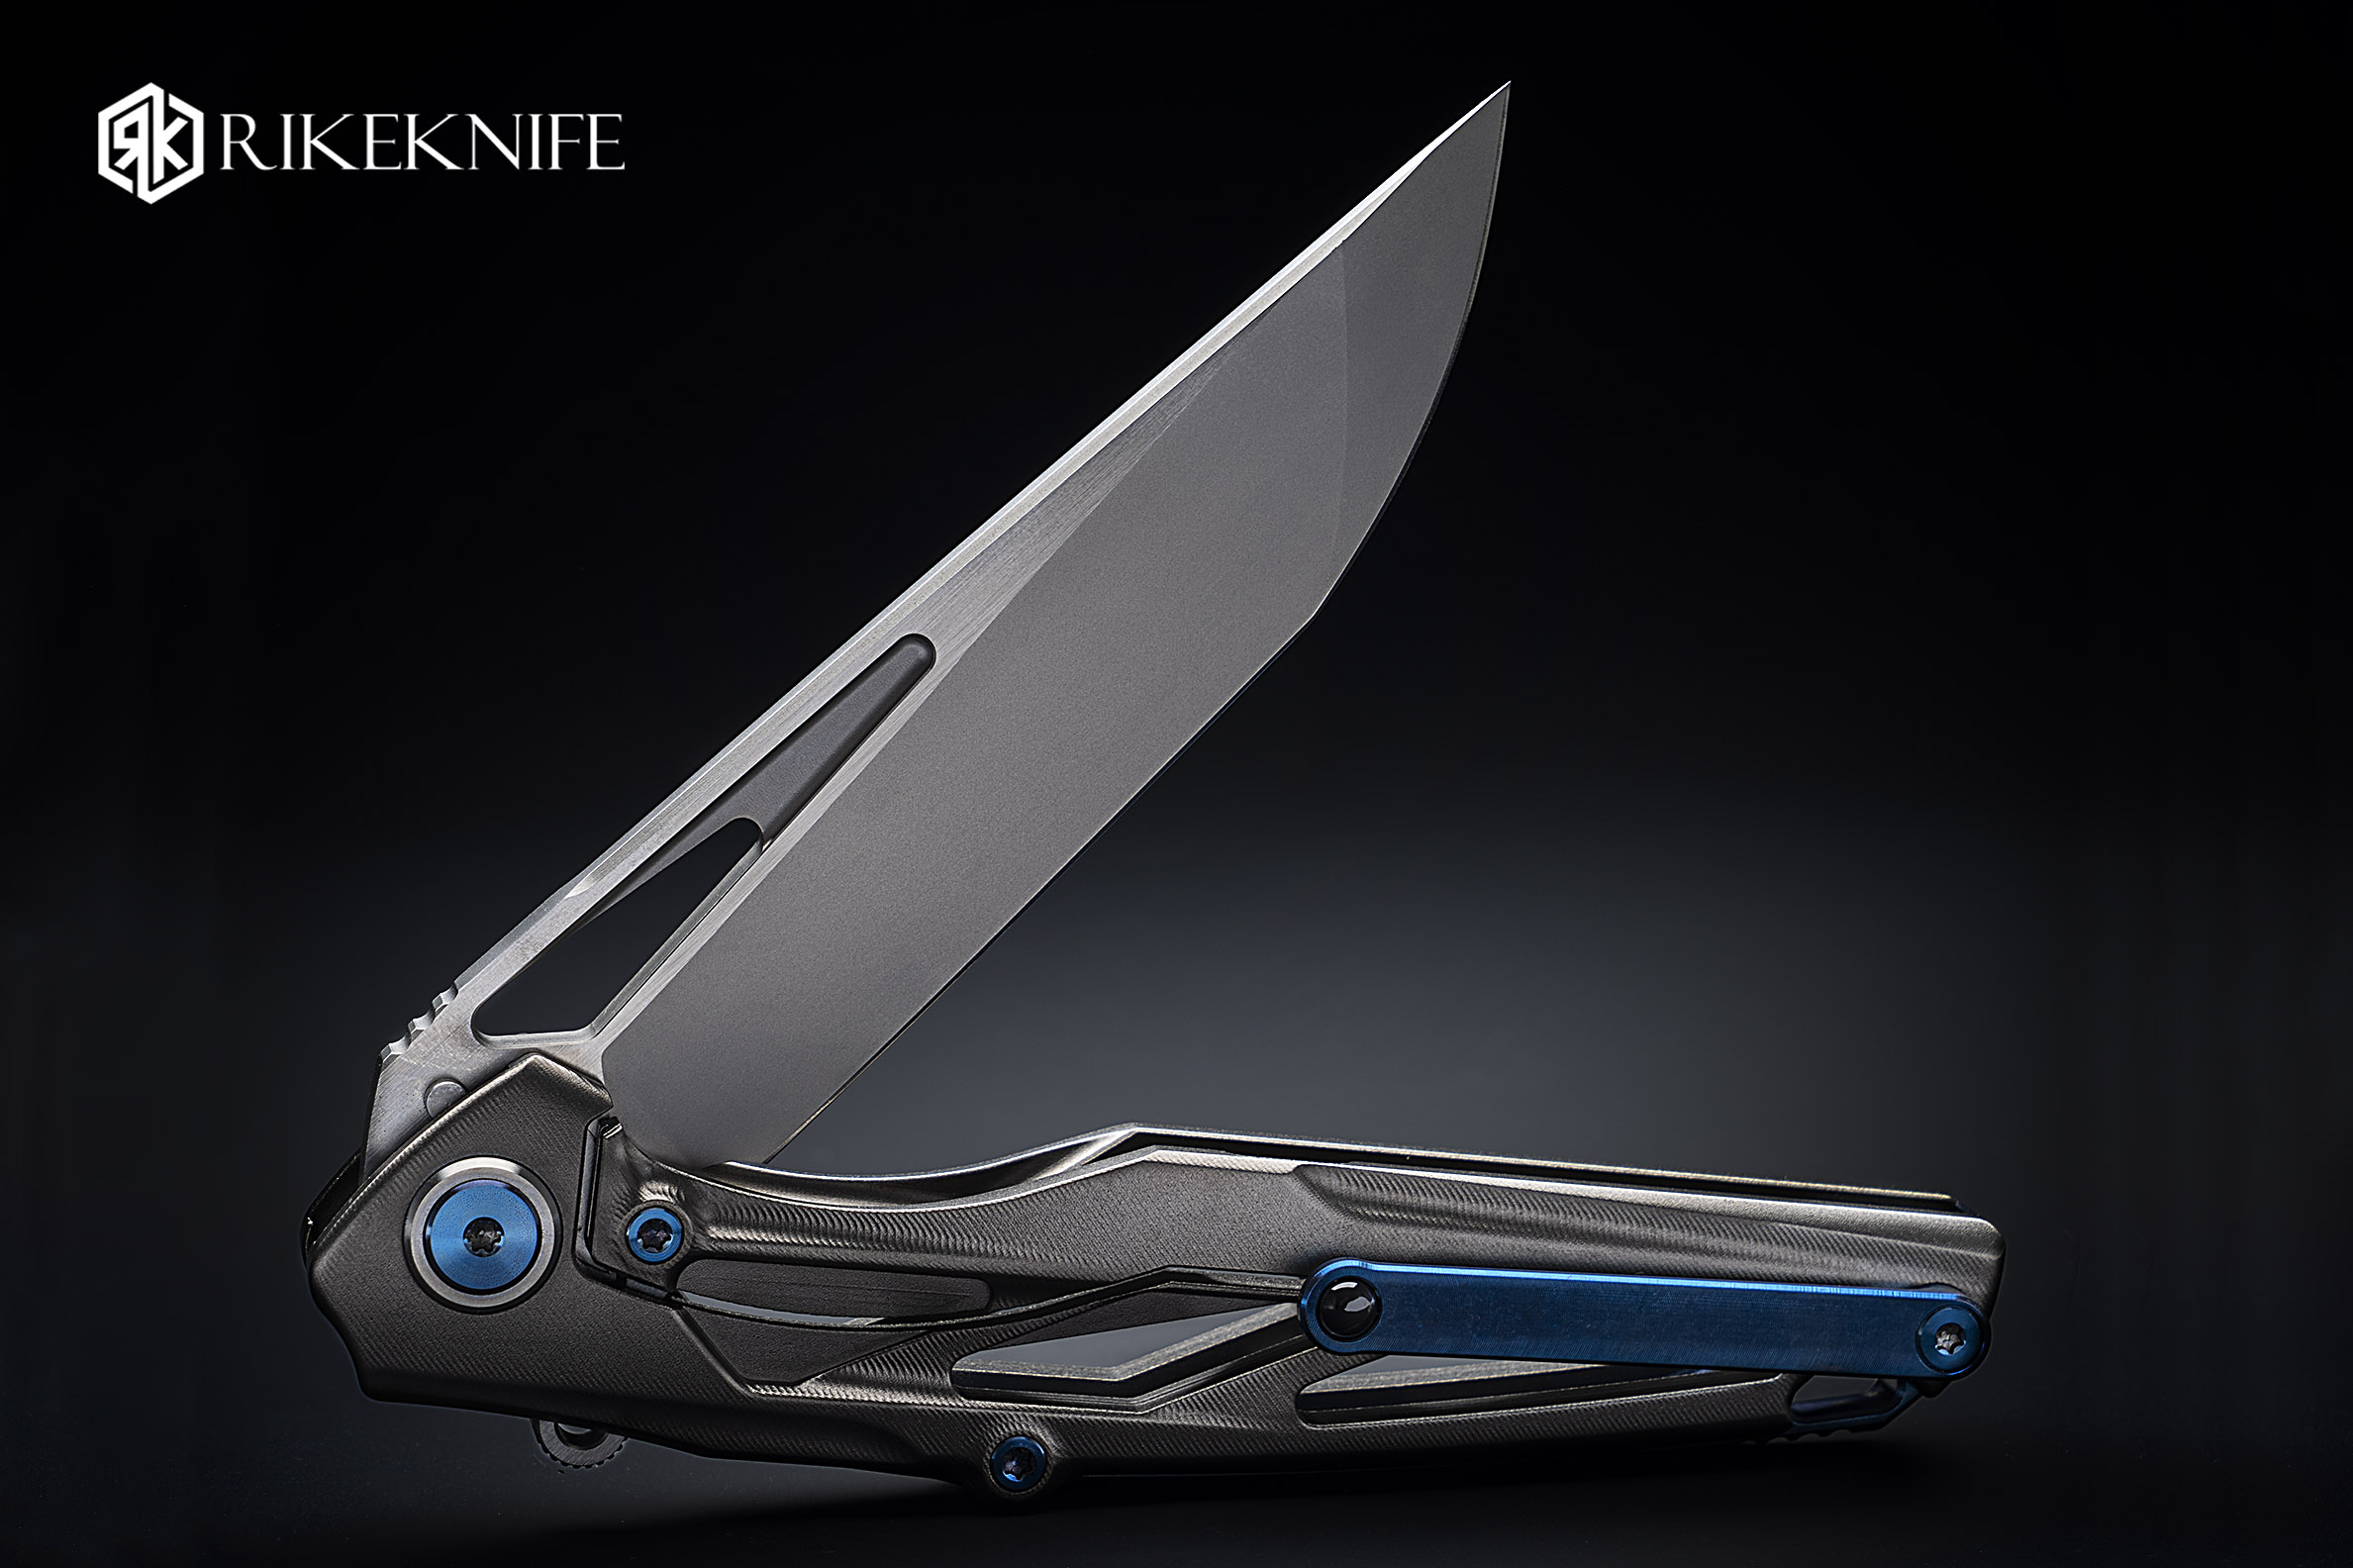 Rike knife